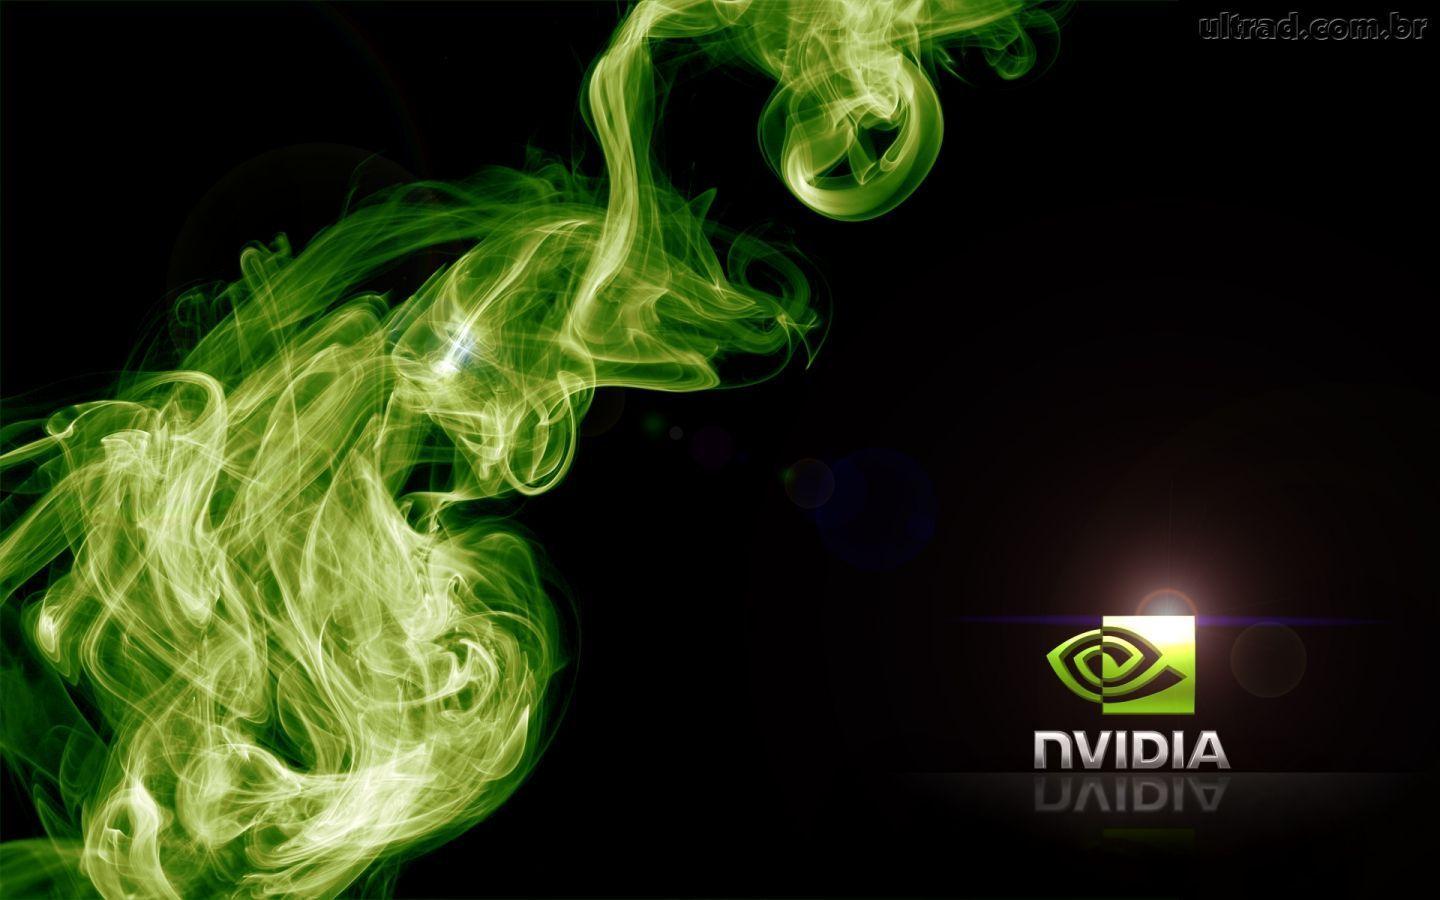 Nvidia Wallpaper 2560x1440 37556 HD Picture. Top Wallpaper Desktop